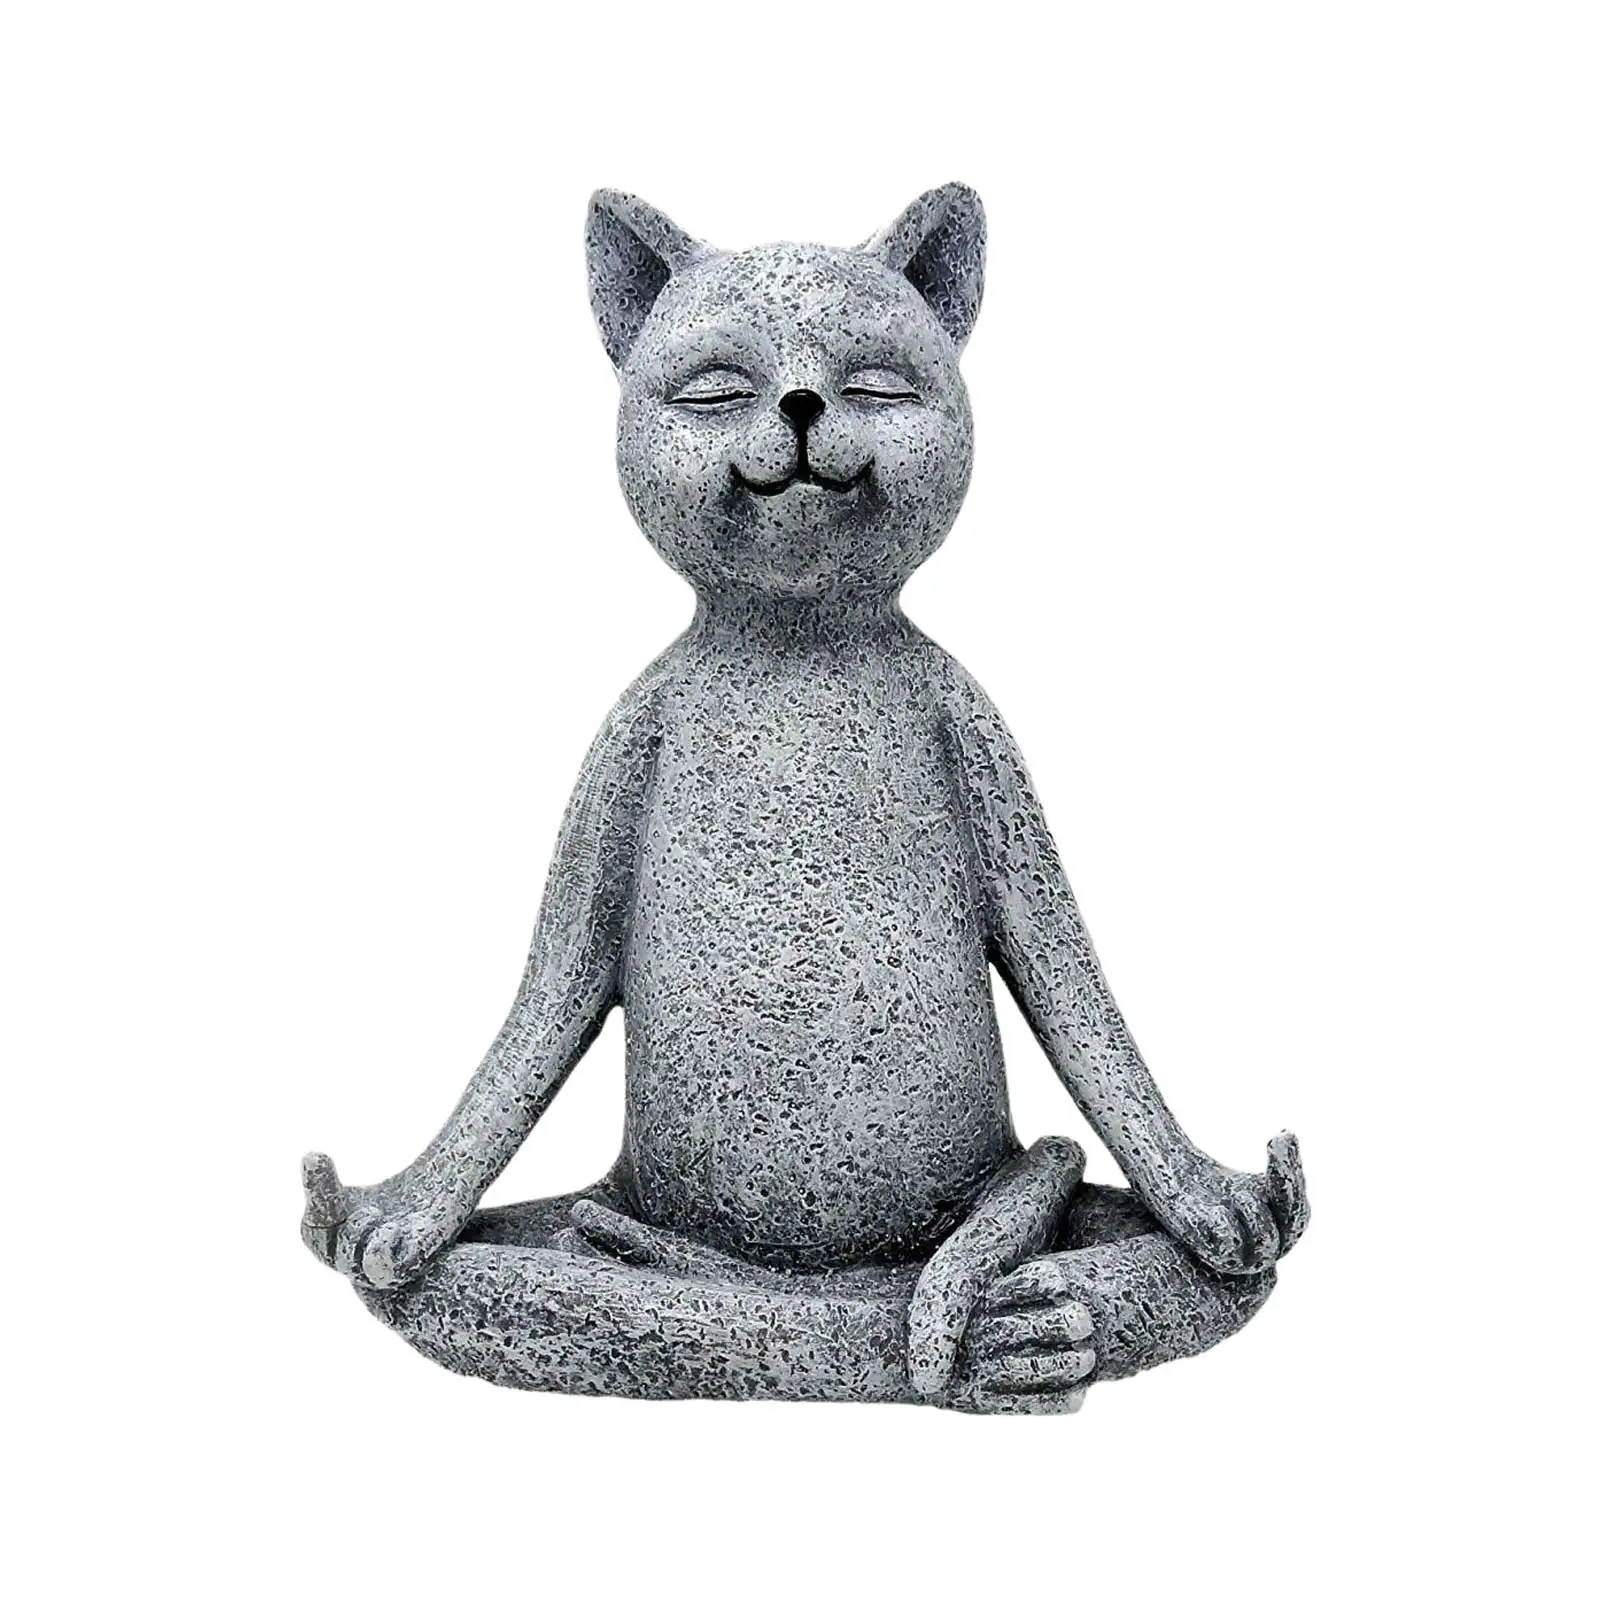 

Статуэтка для медитации статуя кота Zen, статуэтка кошки для медитации, йоги, коллекционная статуэтка Будды кошки, скульптура для патио, сада ...